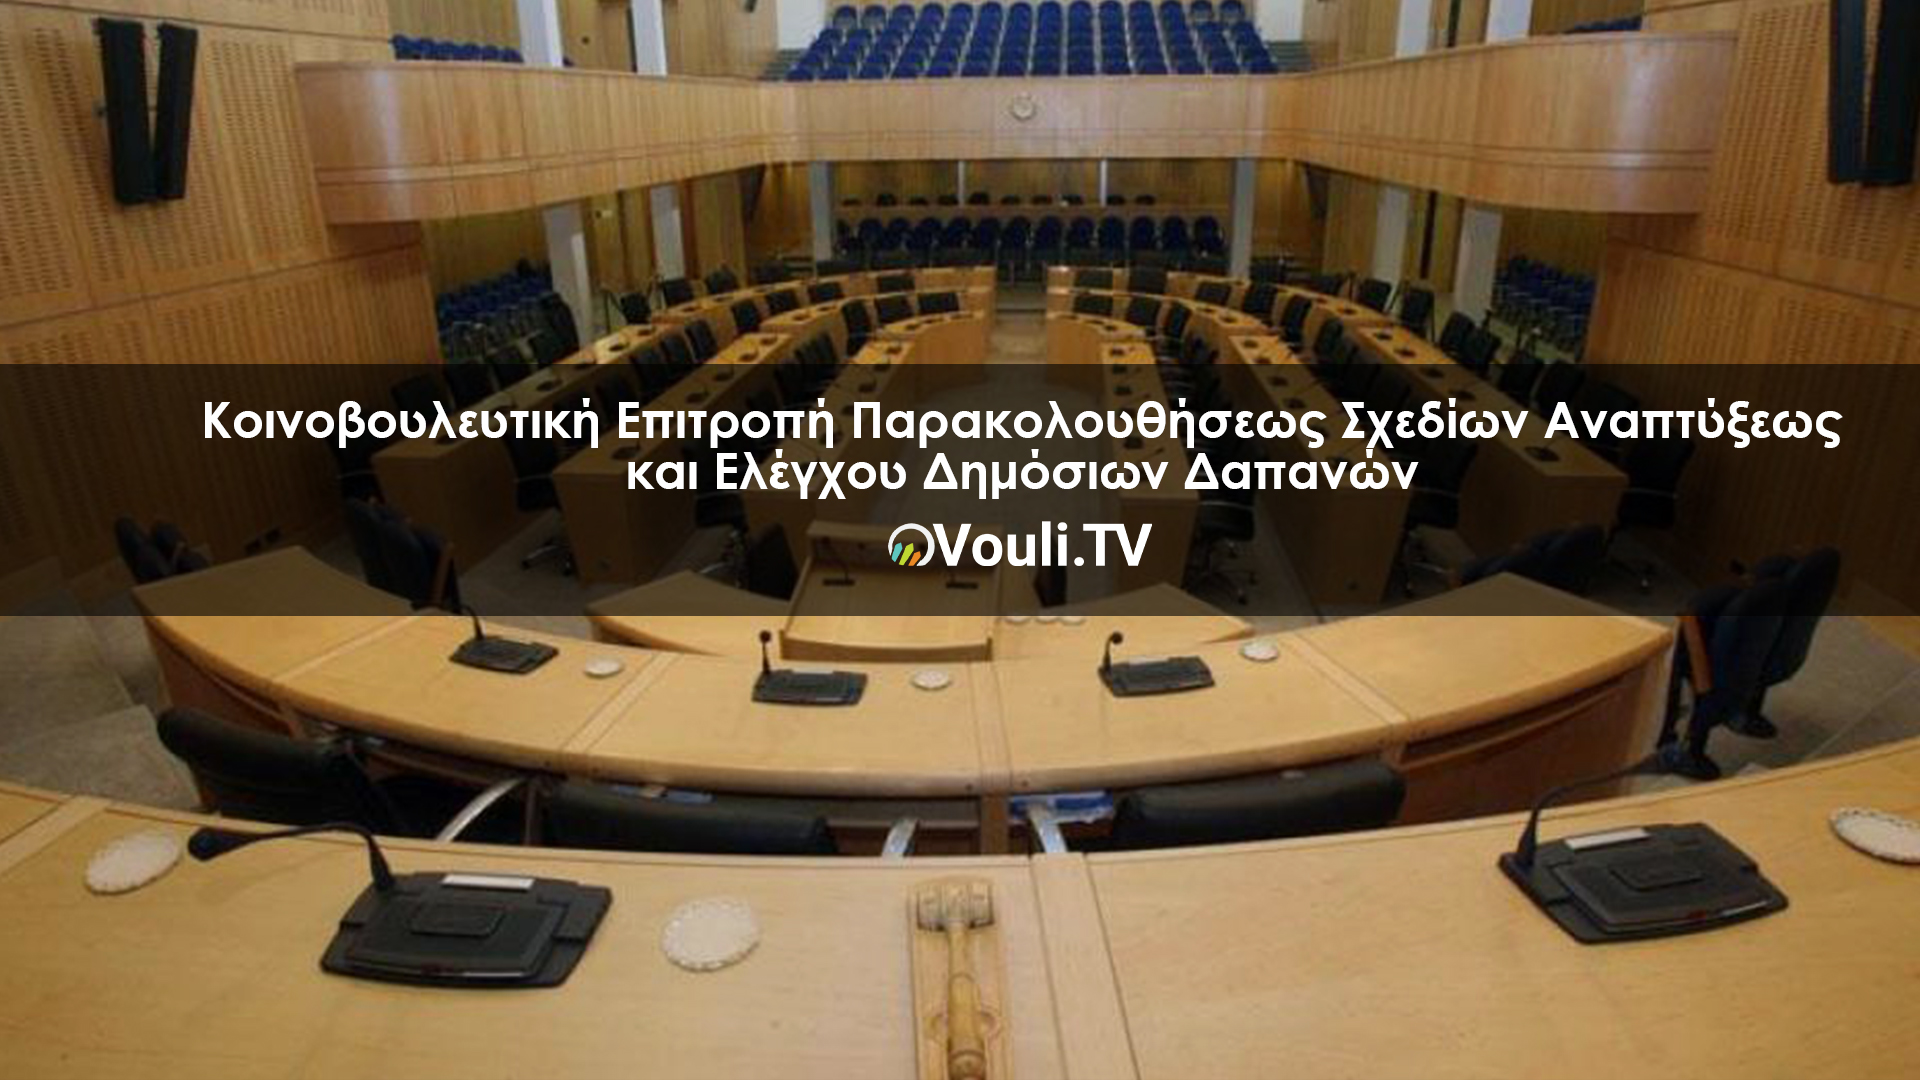 Κοινοβουλευτική Επιτροπή Παρακολουθήσεως Σχεδίων Αναπτύξεως και Ελέγχου Δημόσιων Δαπανών | Vouli report 25/11/2021